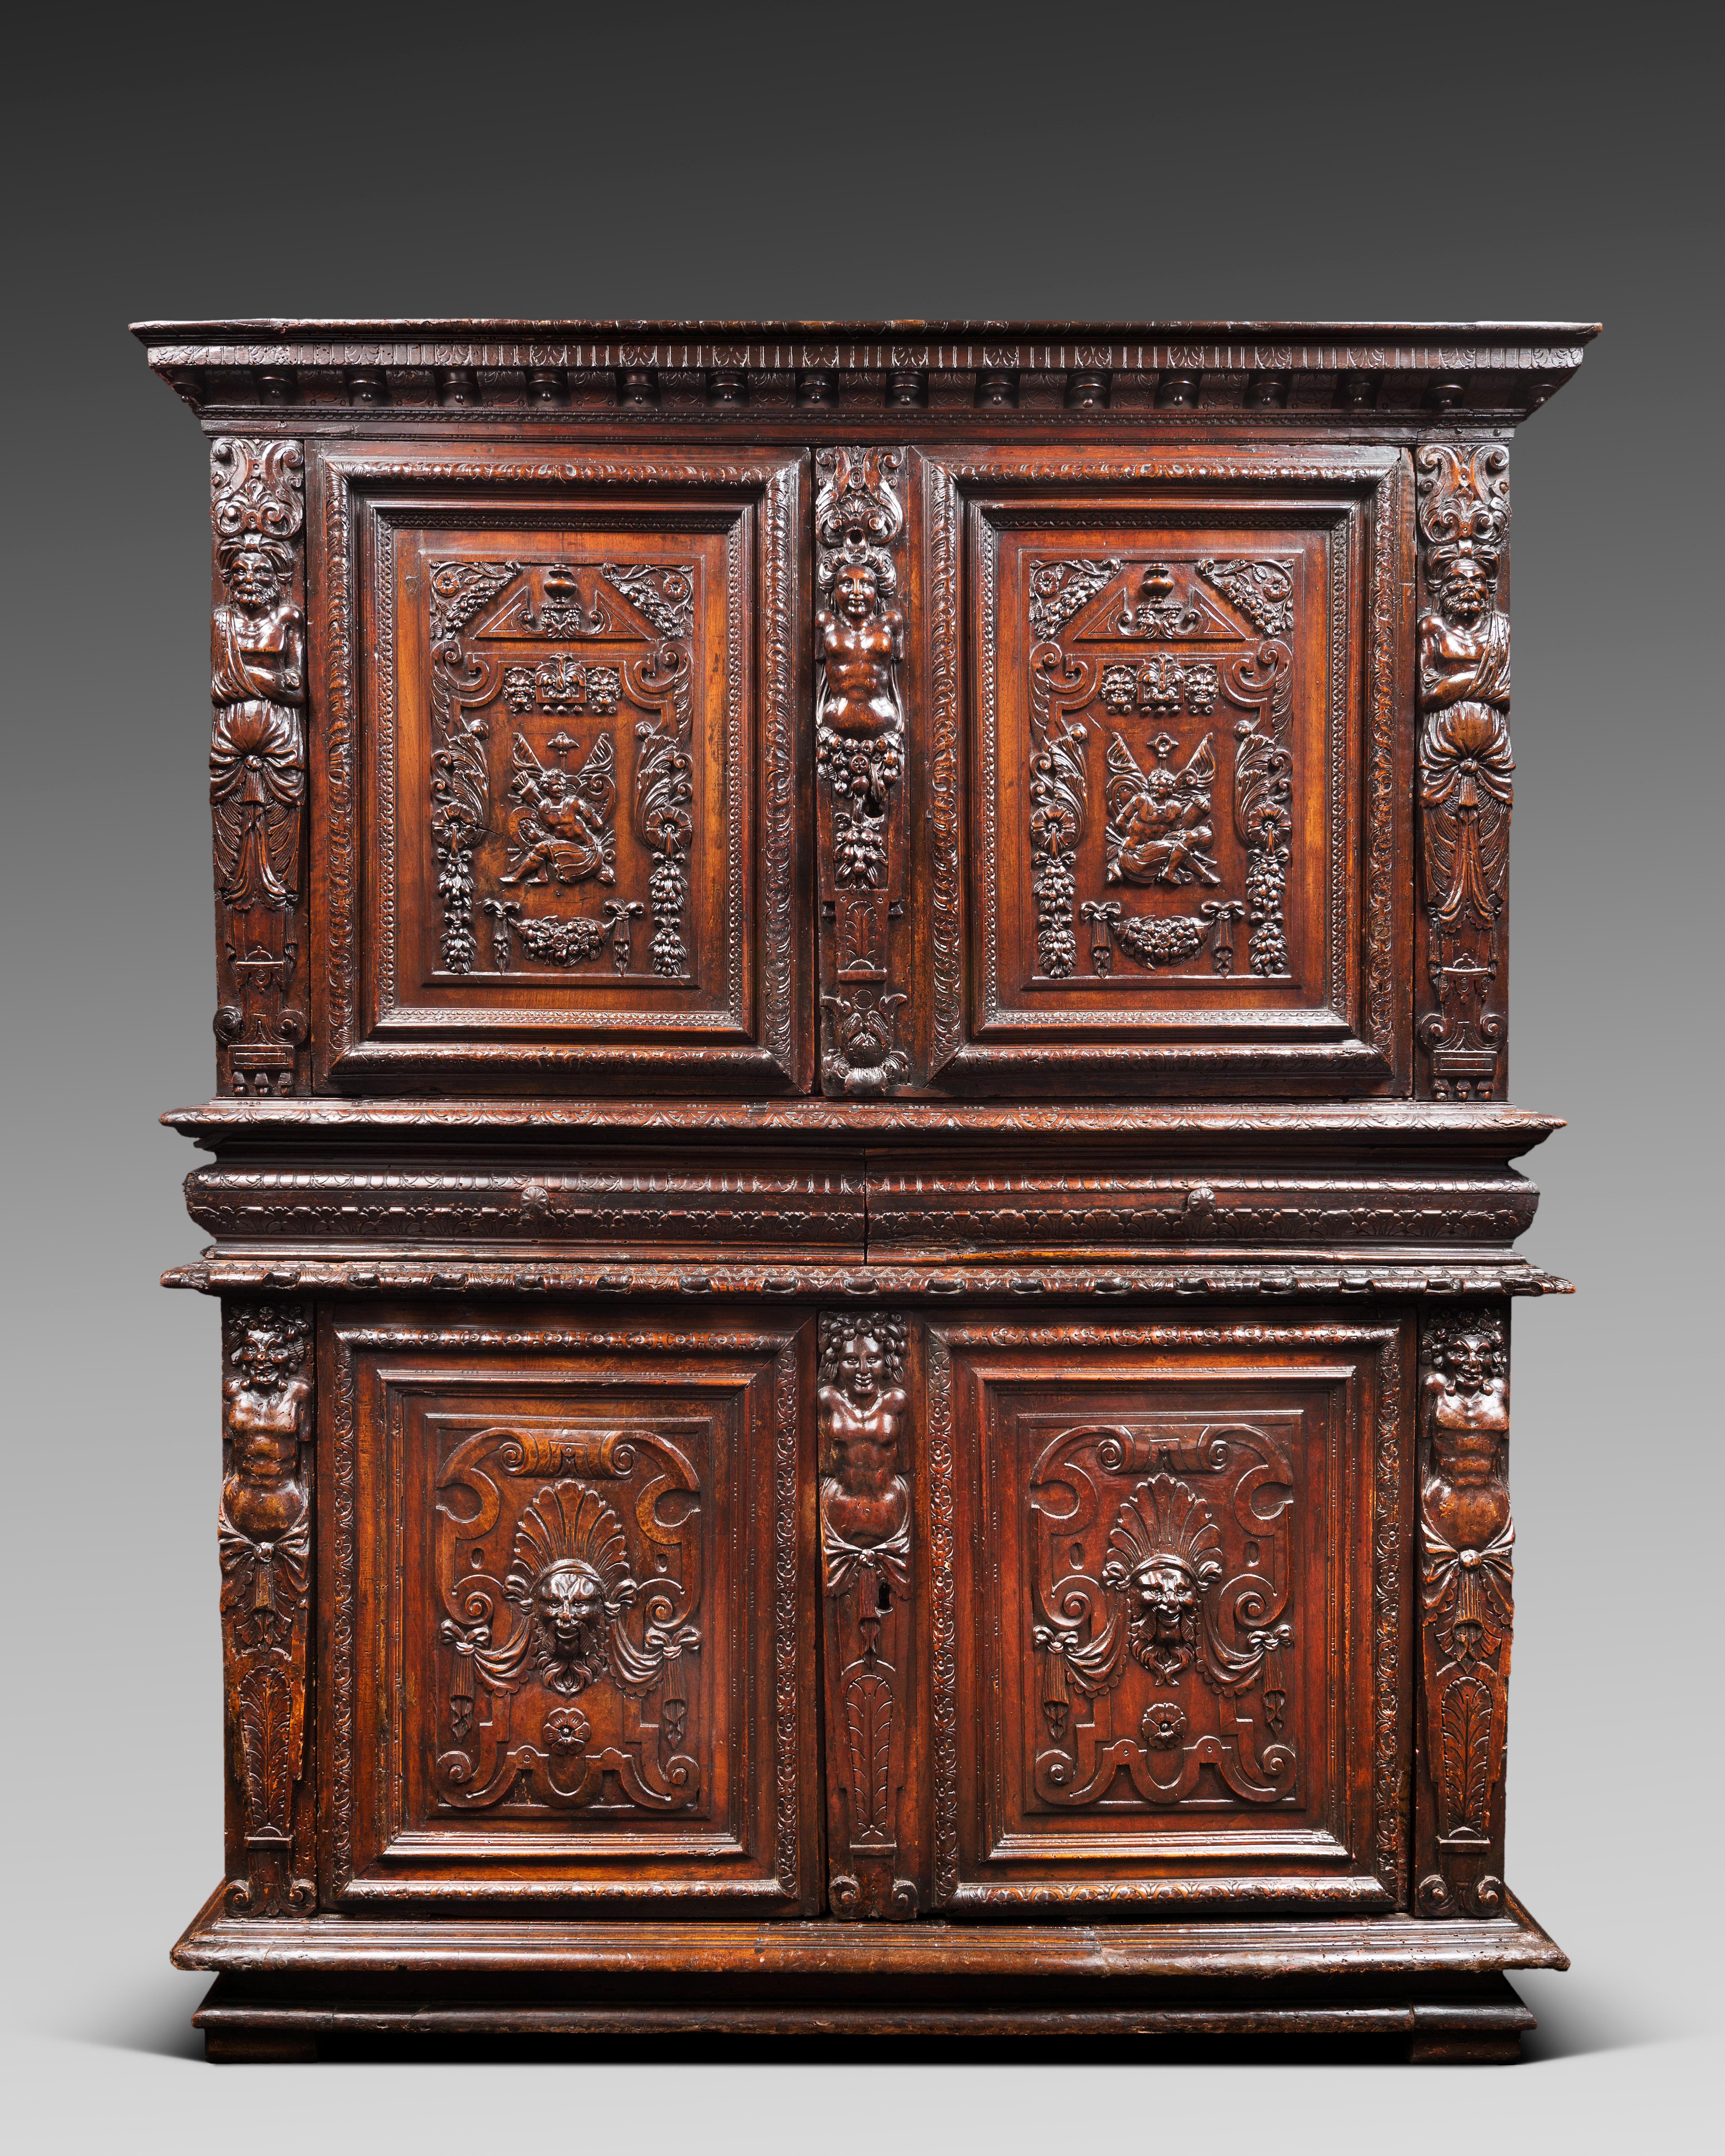 Serrure et clé originales

Ce meuble ne présente pas d'évidement sur sa partie supérieure. Il s'ouvre par quatre portes Foldes et deux tiroirs à l'intérieur de la ceinture. La clé porte la date de 1524 au-dessus de motifs en forme de croix.

Les